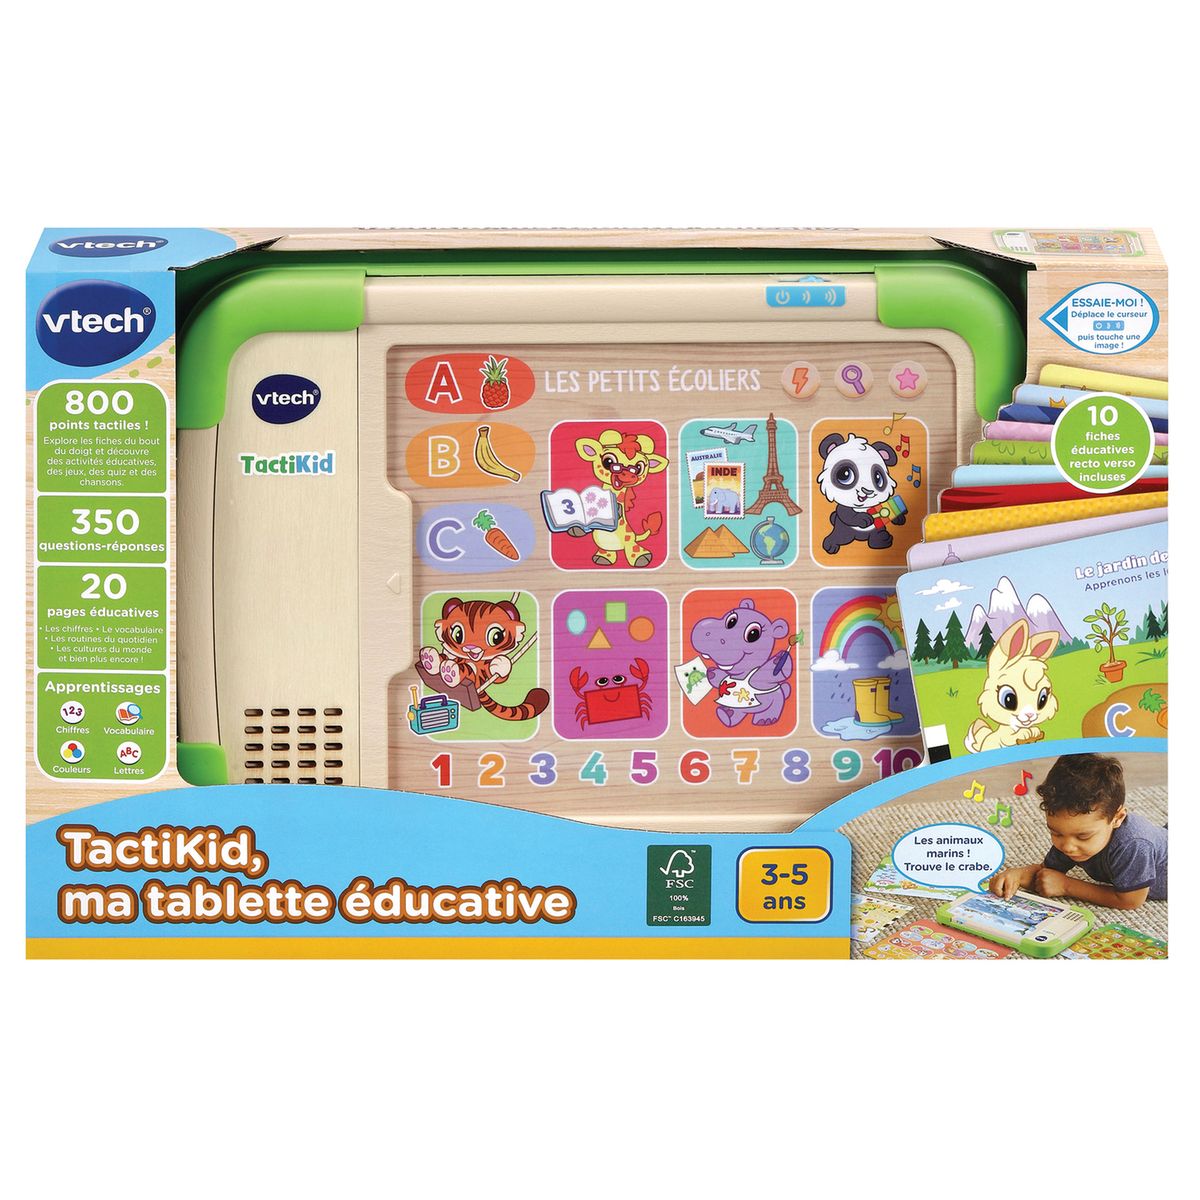 VTech Storio Max 2.0 Educational Tablet - Tablette éducatif